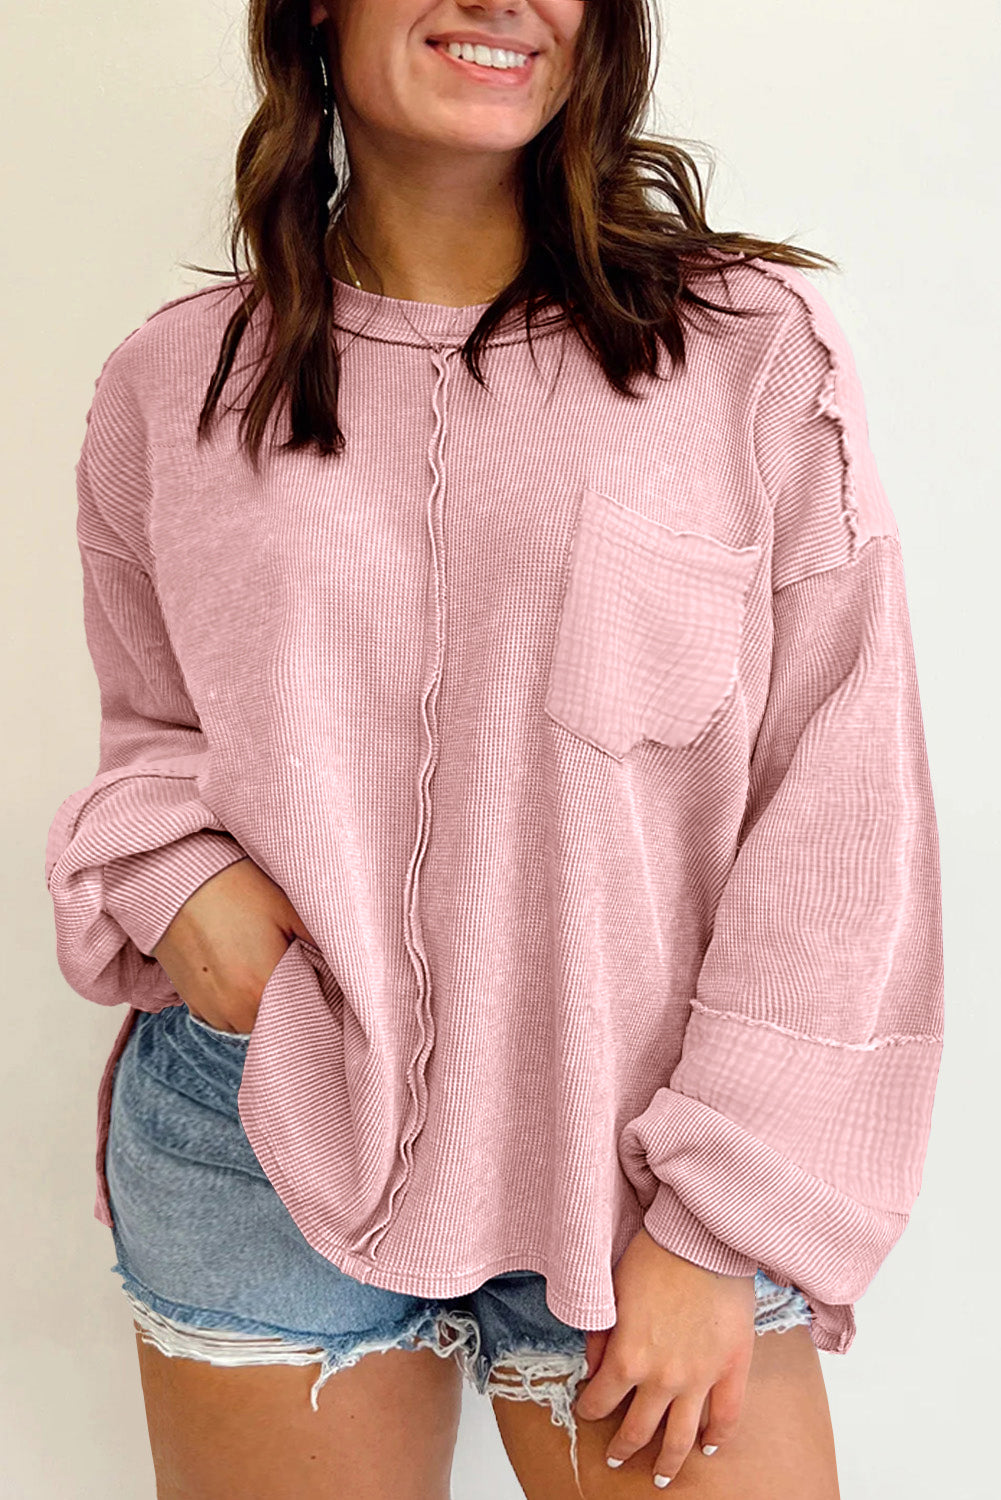 Rožnata majica v veliki velikosti z izpostavljenimi šivi in ​​gubami